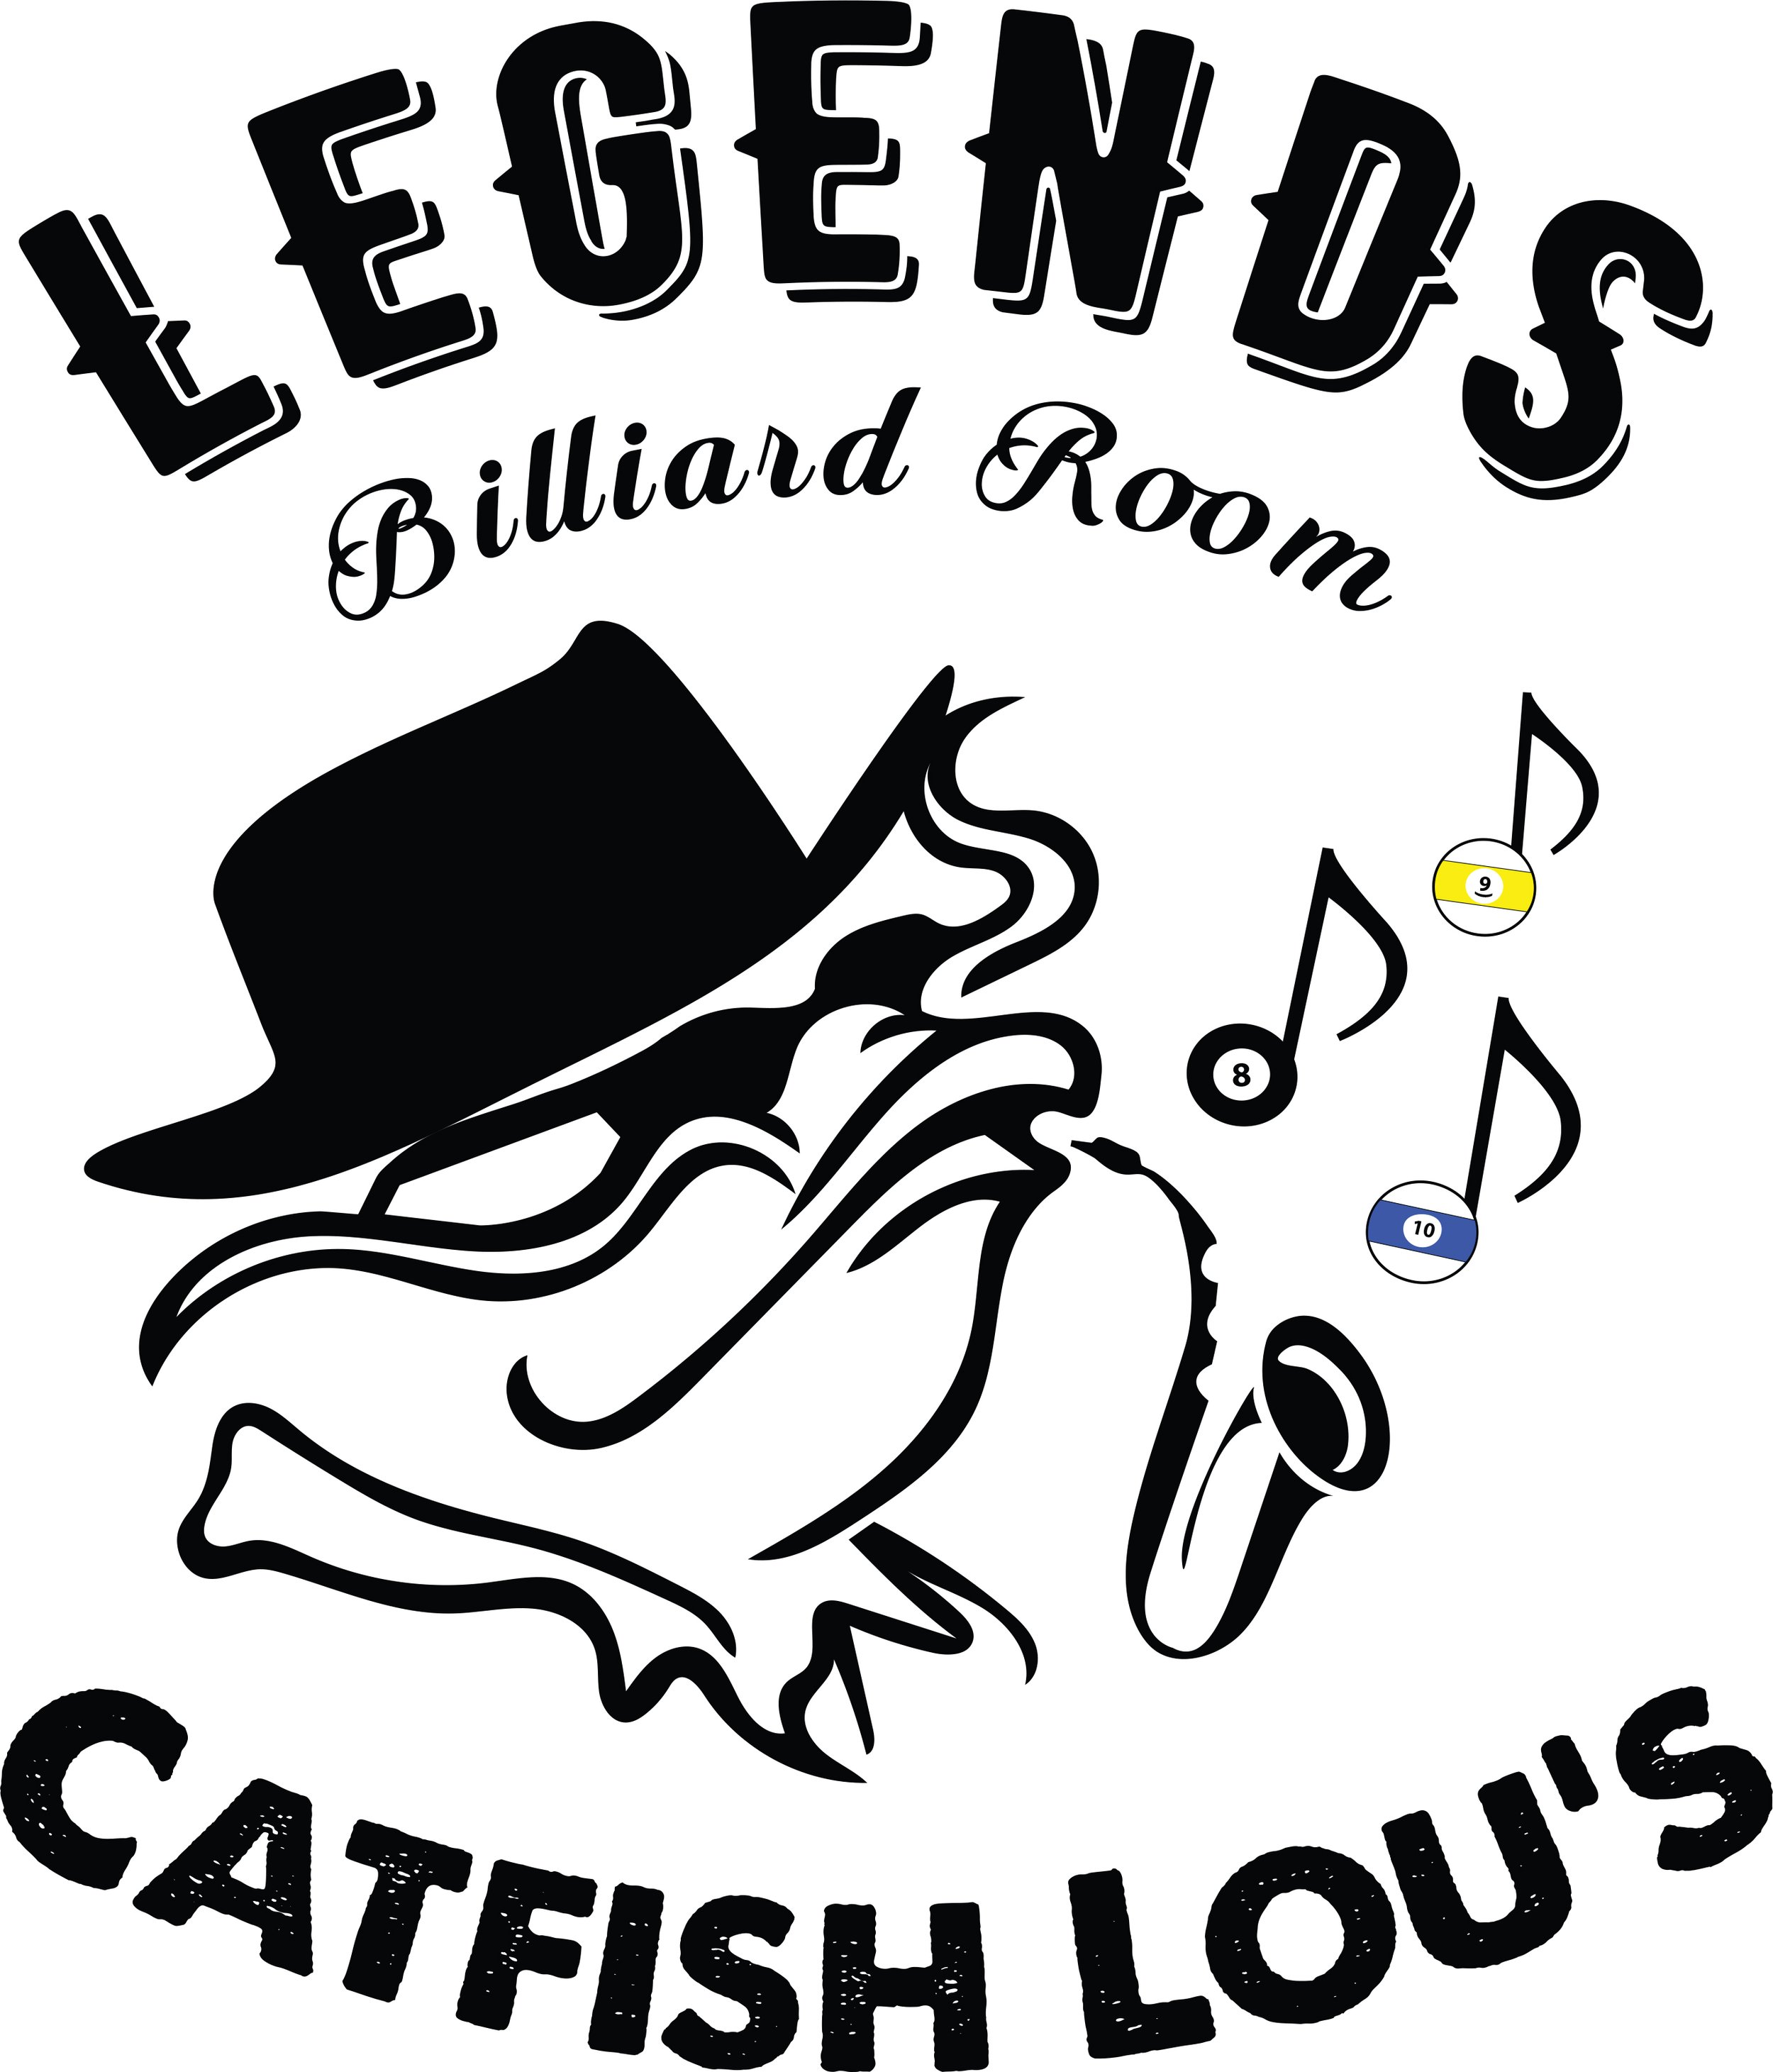 Legends Billiard Room